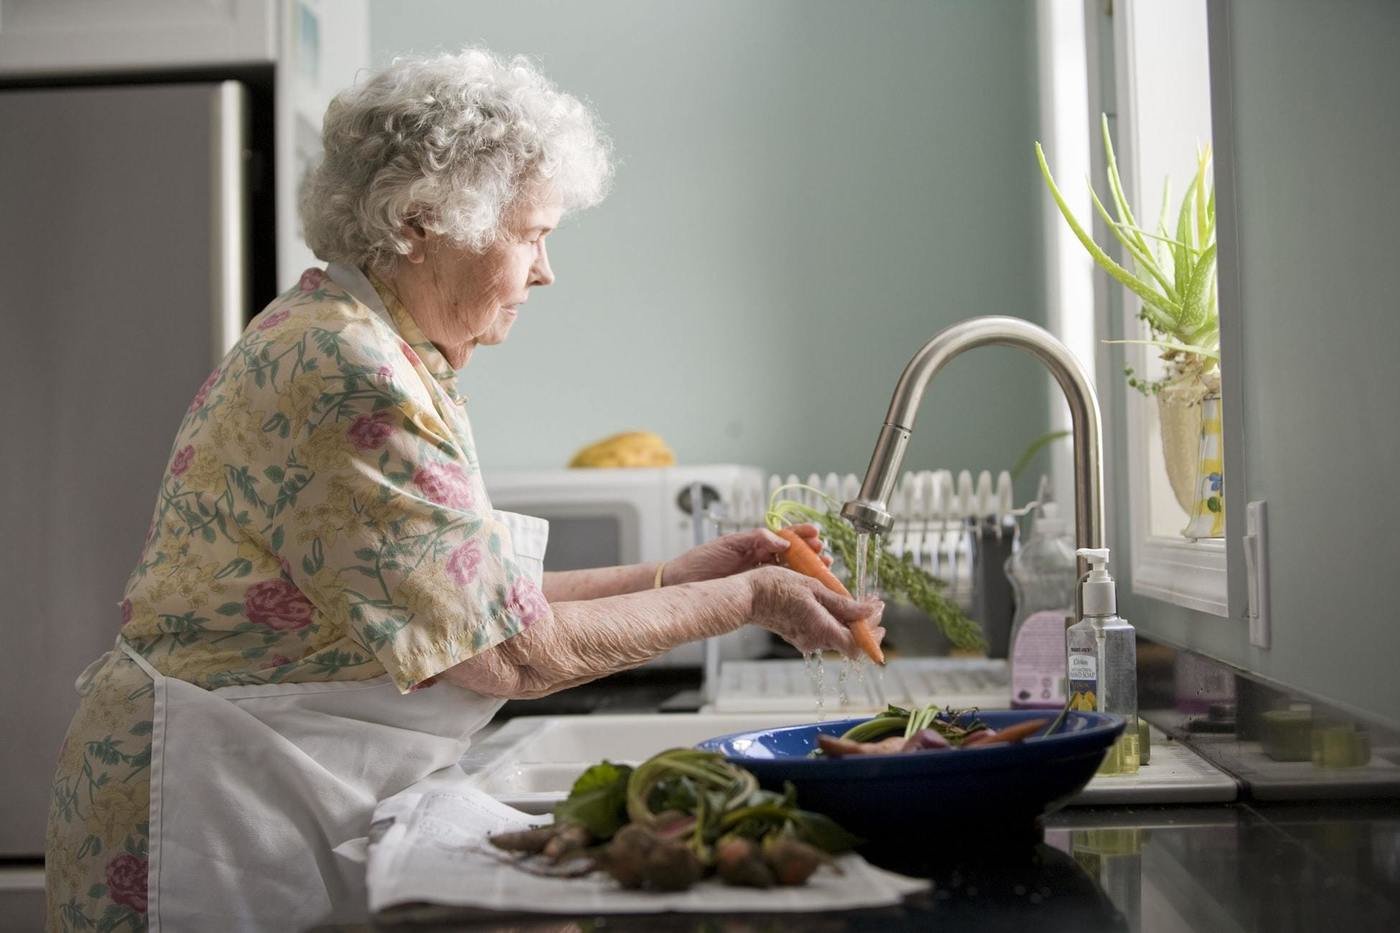 Aged lady washing food